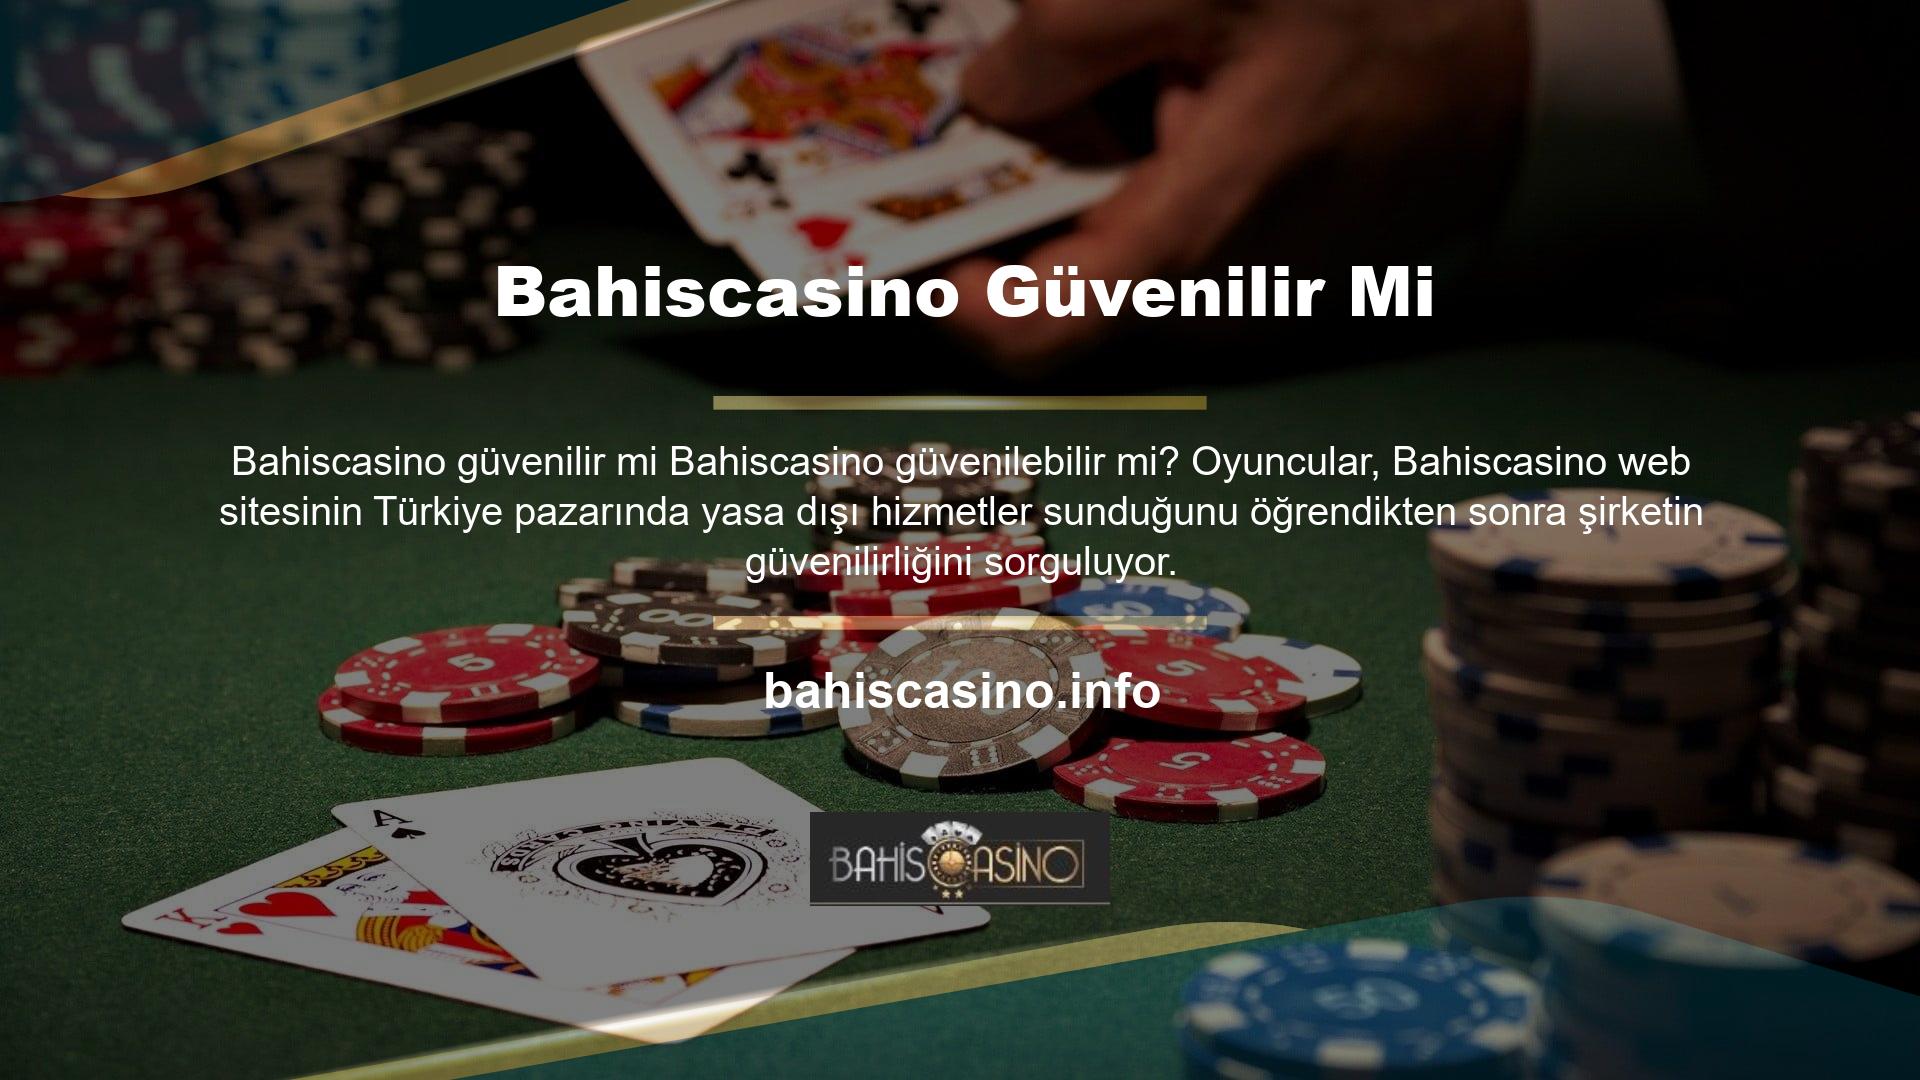 Casino meraklıları Bahiscasino güvenilebilir mi sorusuna cevap arıyor